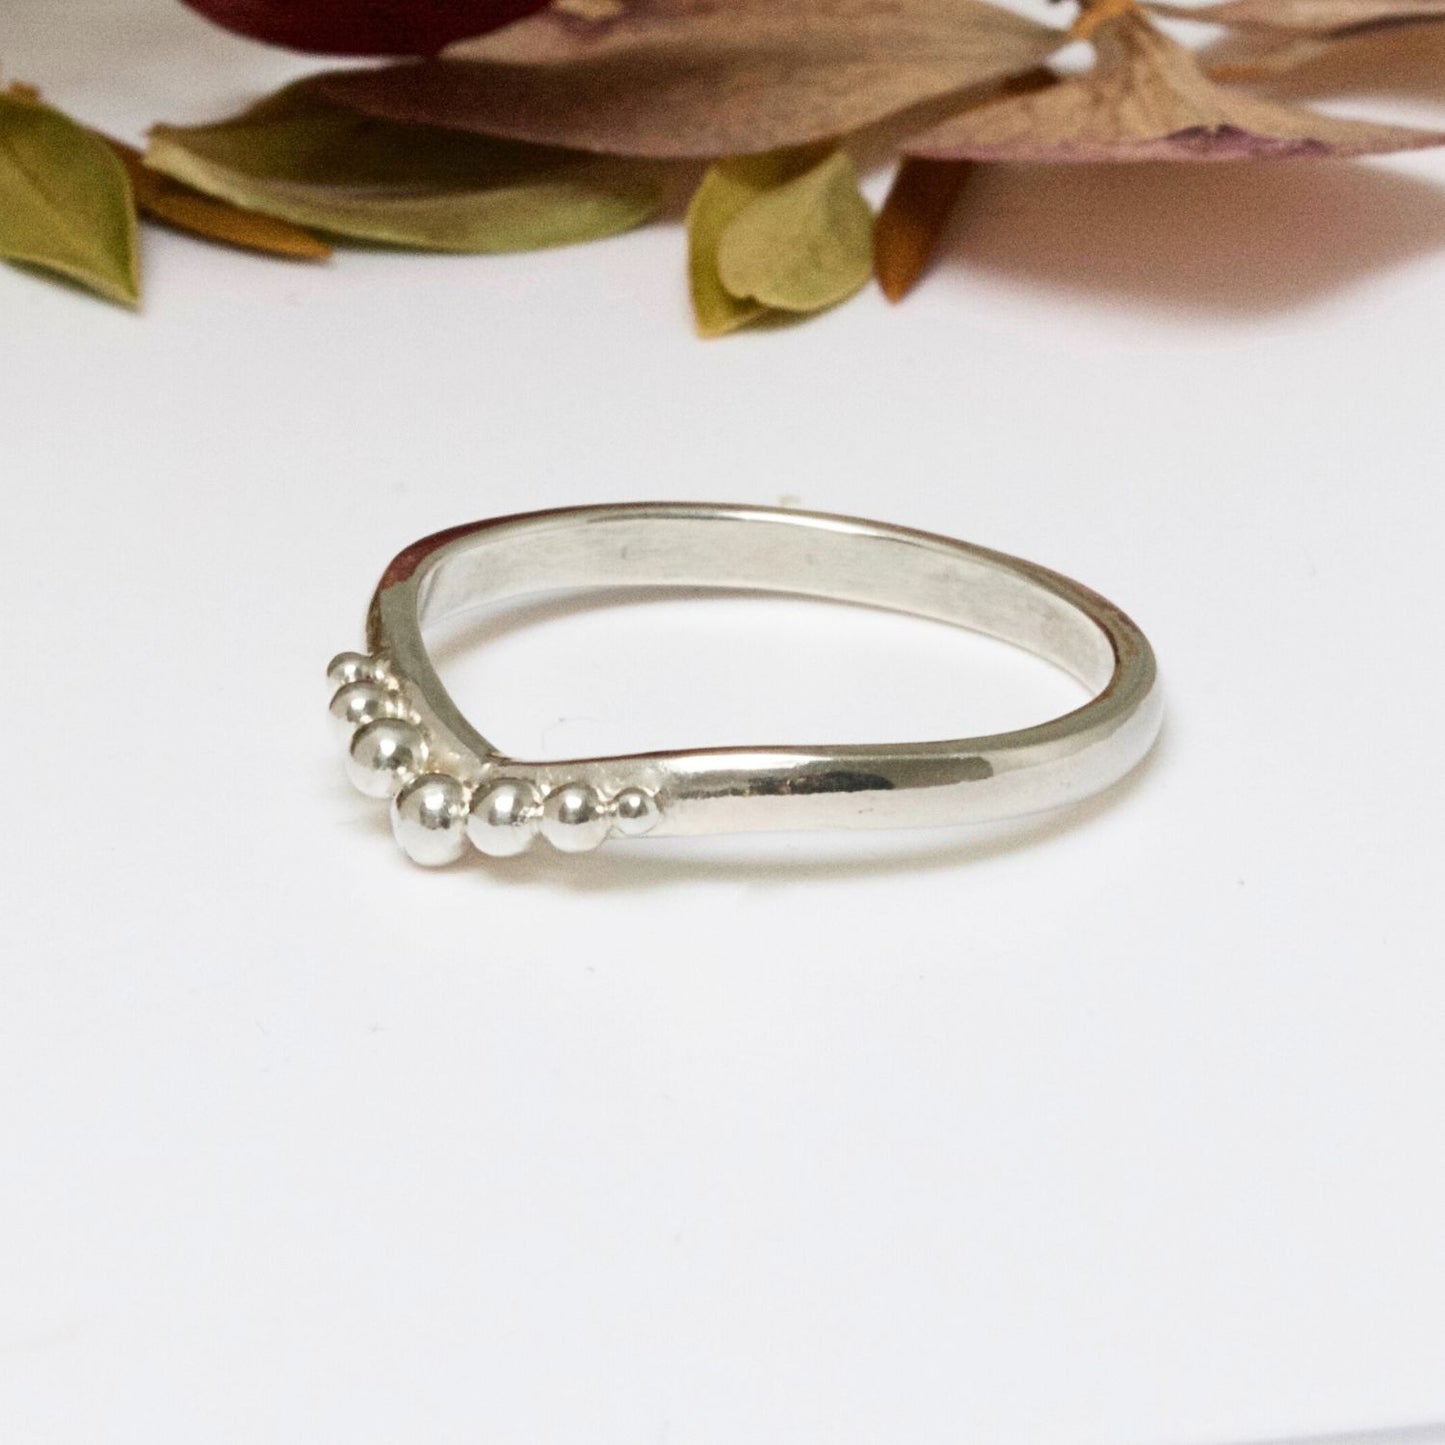 Fairie inspired beaded wedding ring